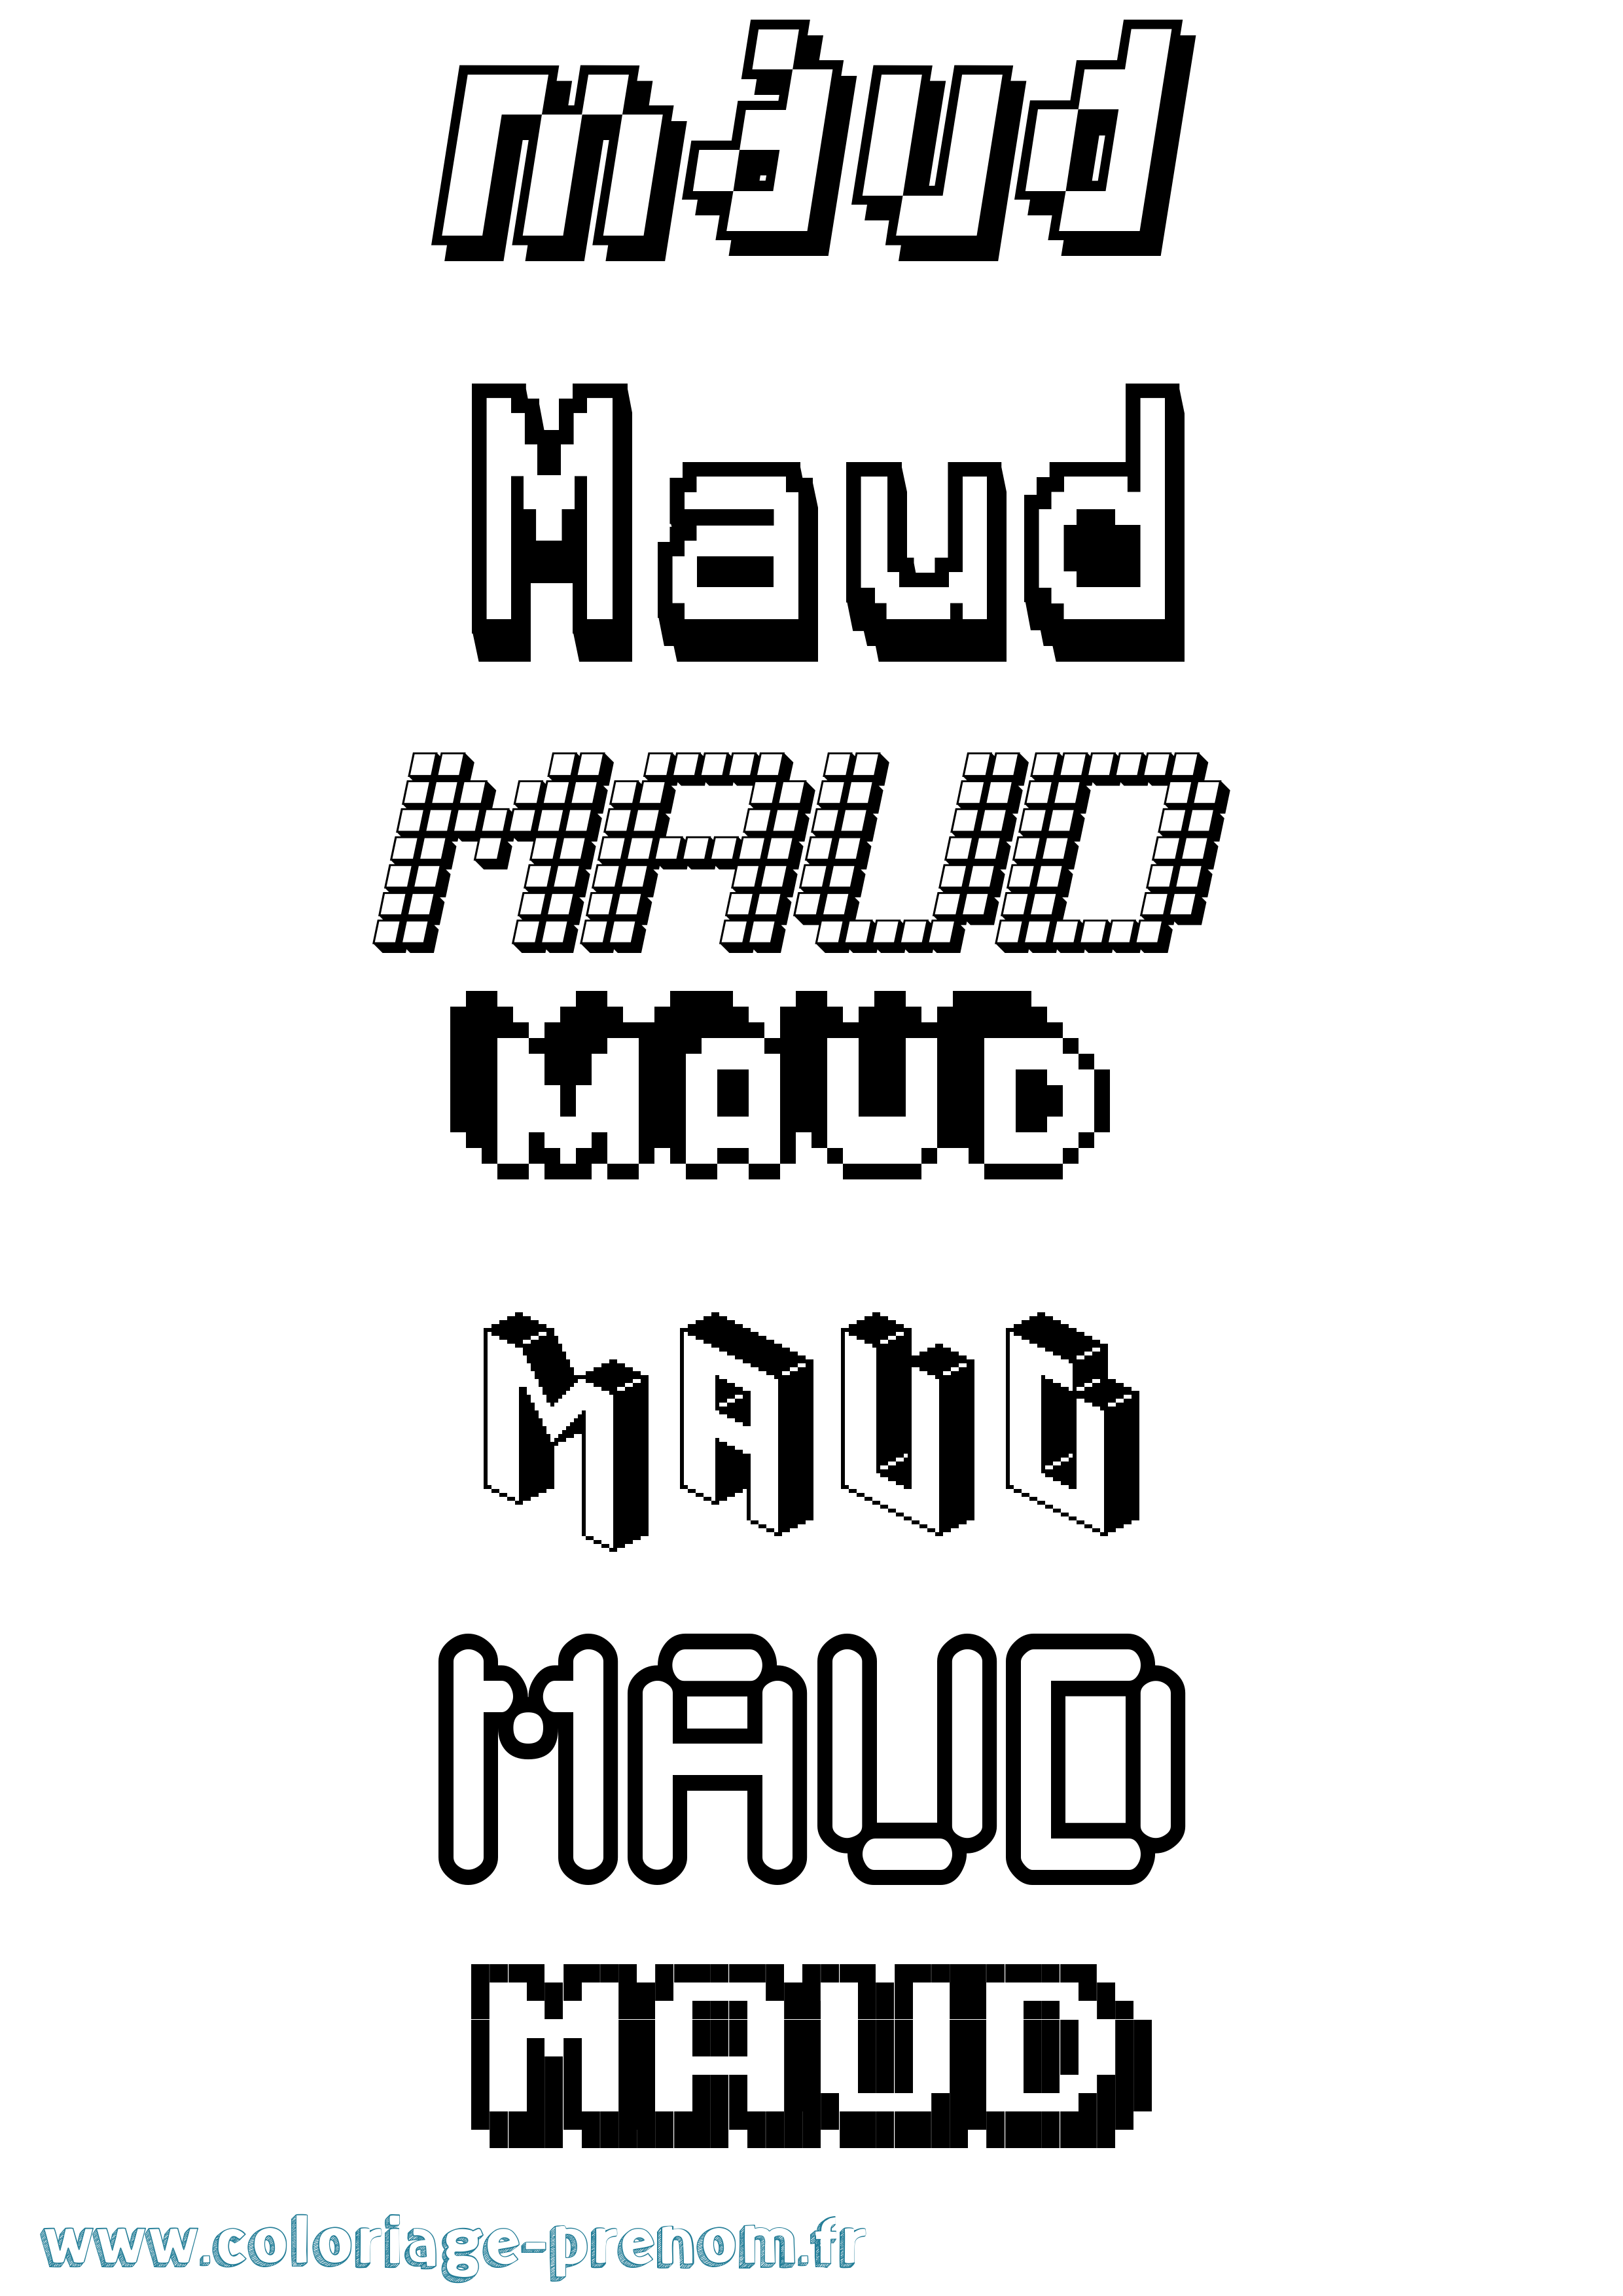 Coloriage prénom Maud